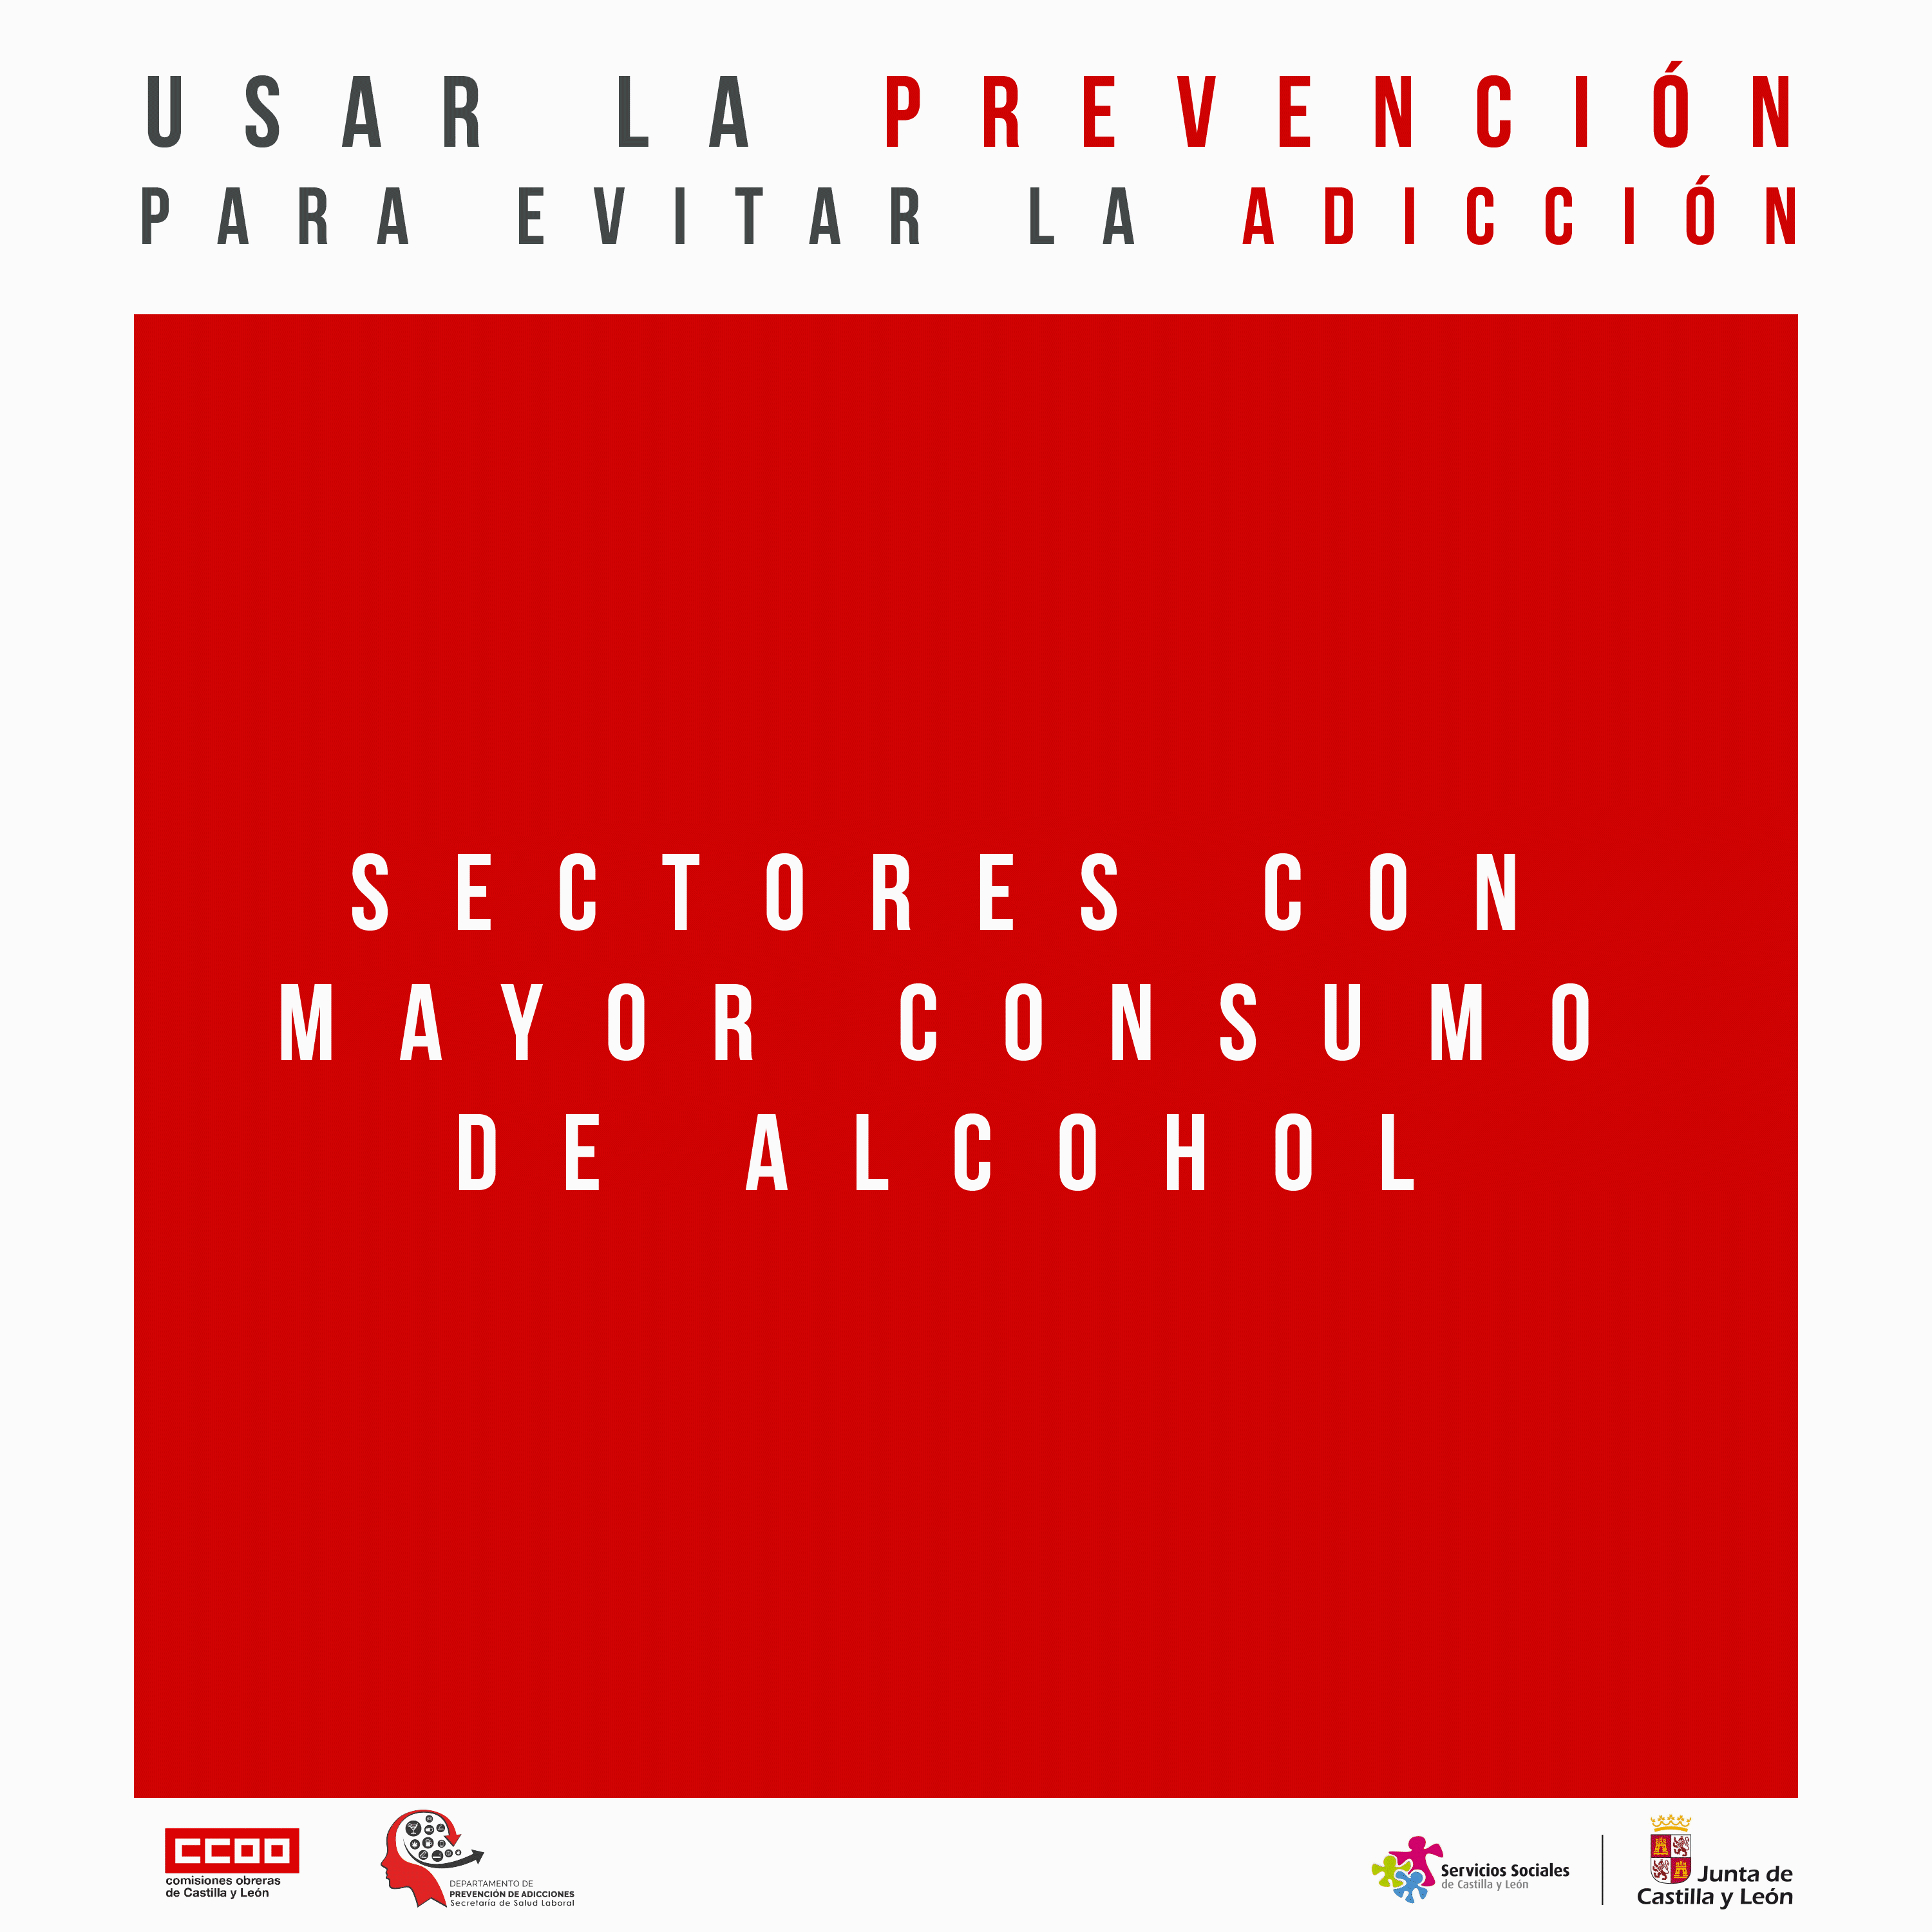 Campaña "Usar la prevención para evitar la adicción" Sectores con más consumo excesivo de alcohol